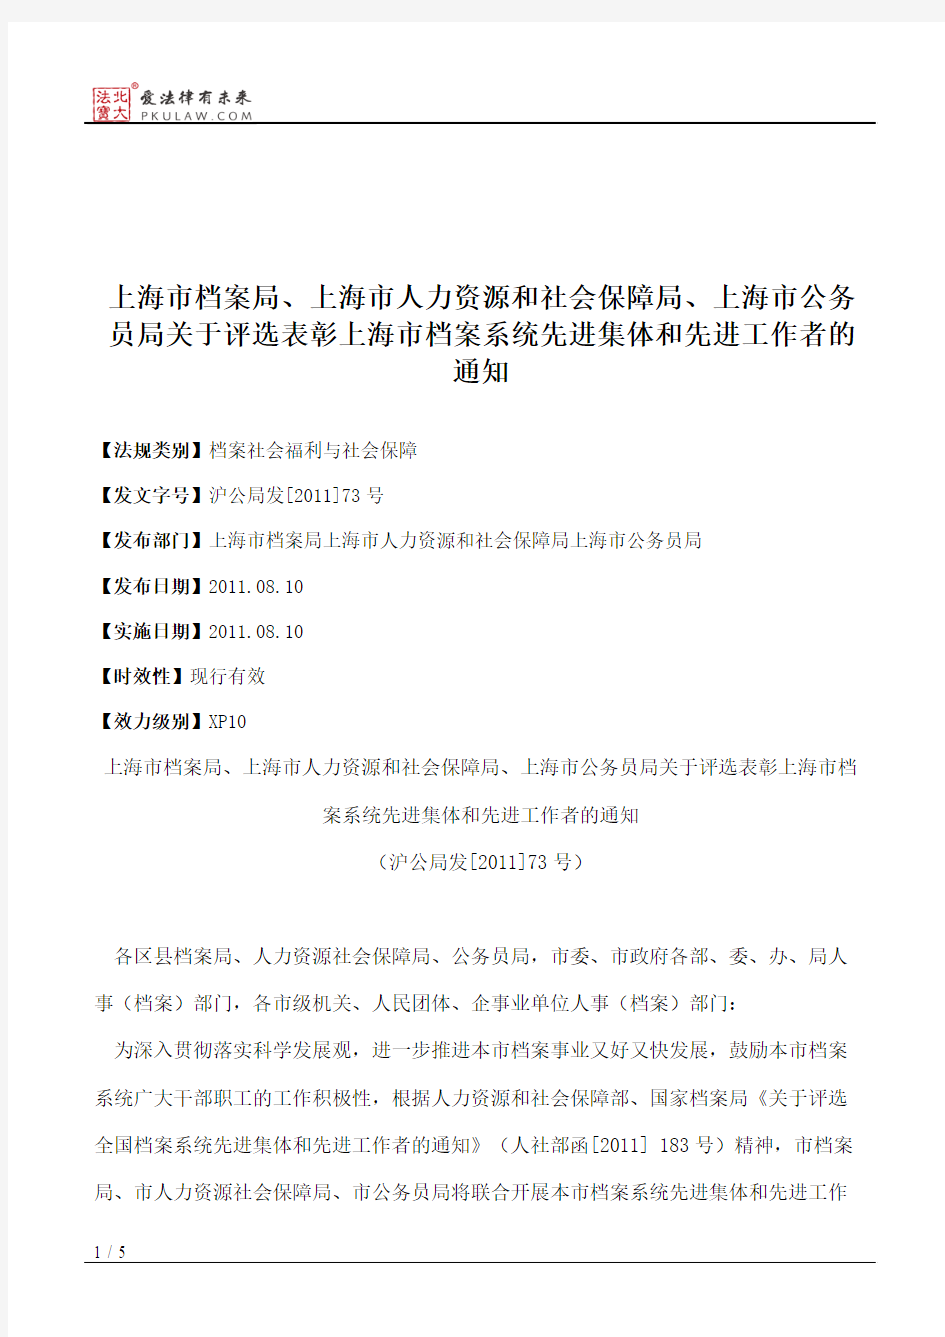 上海市档案局、上海市人力资源和社会保障局、上海市公务员局关于